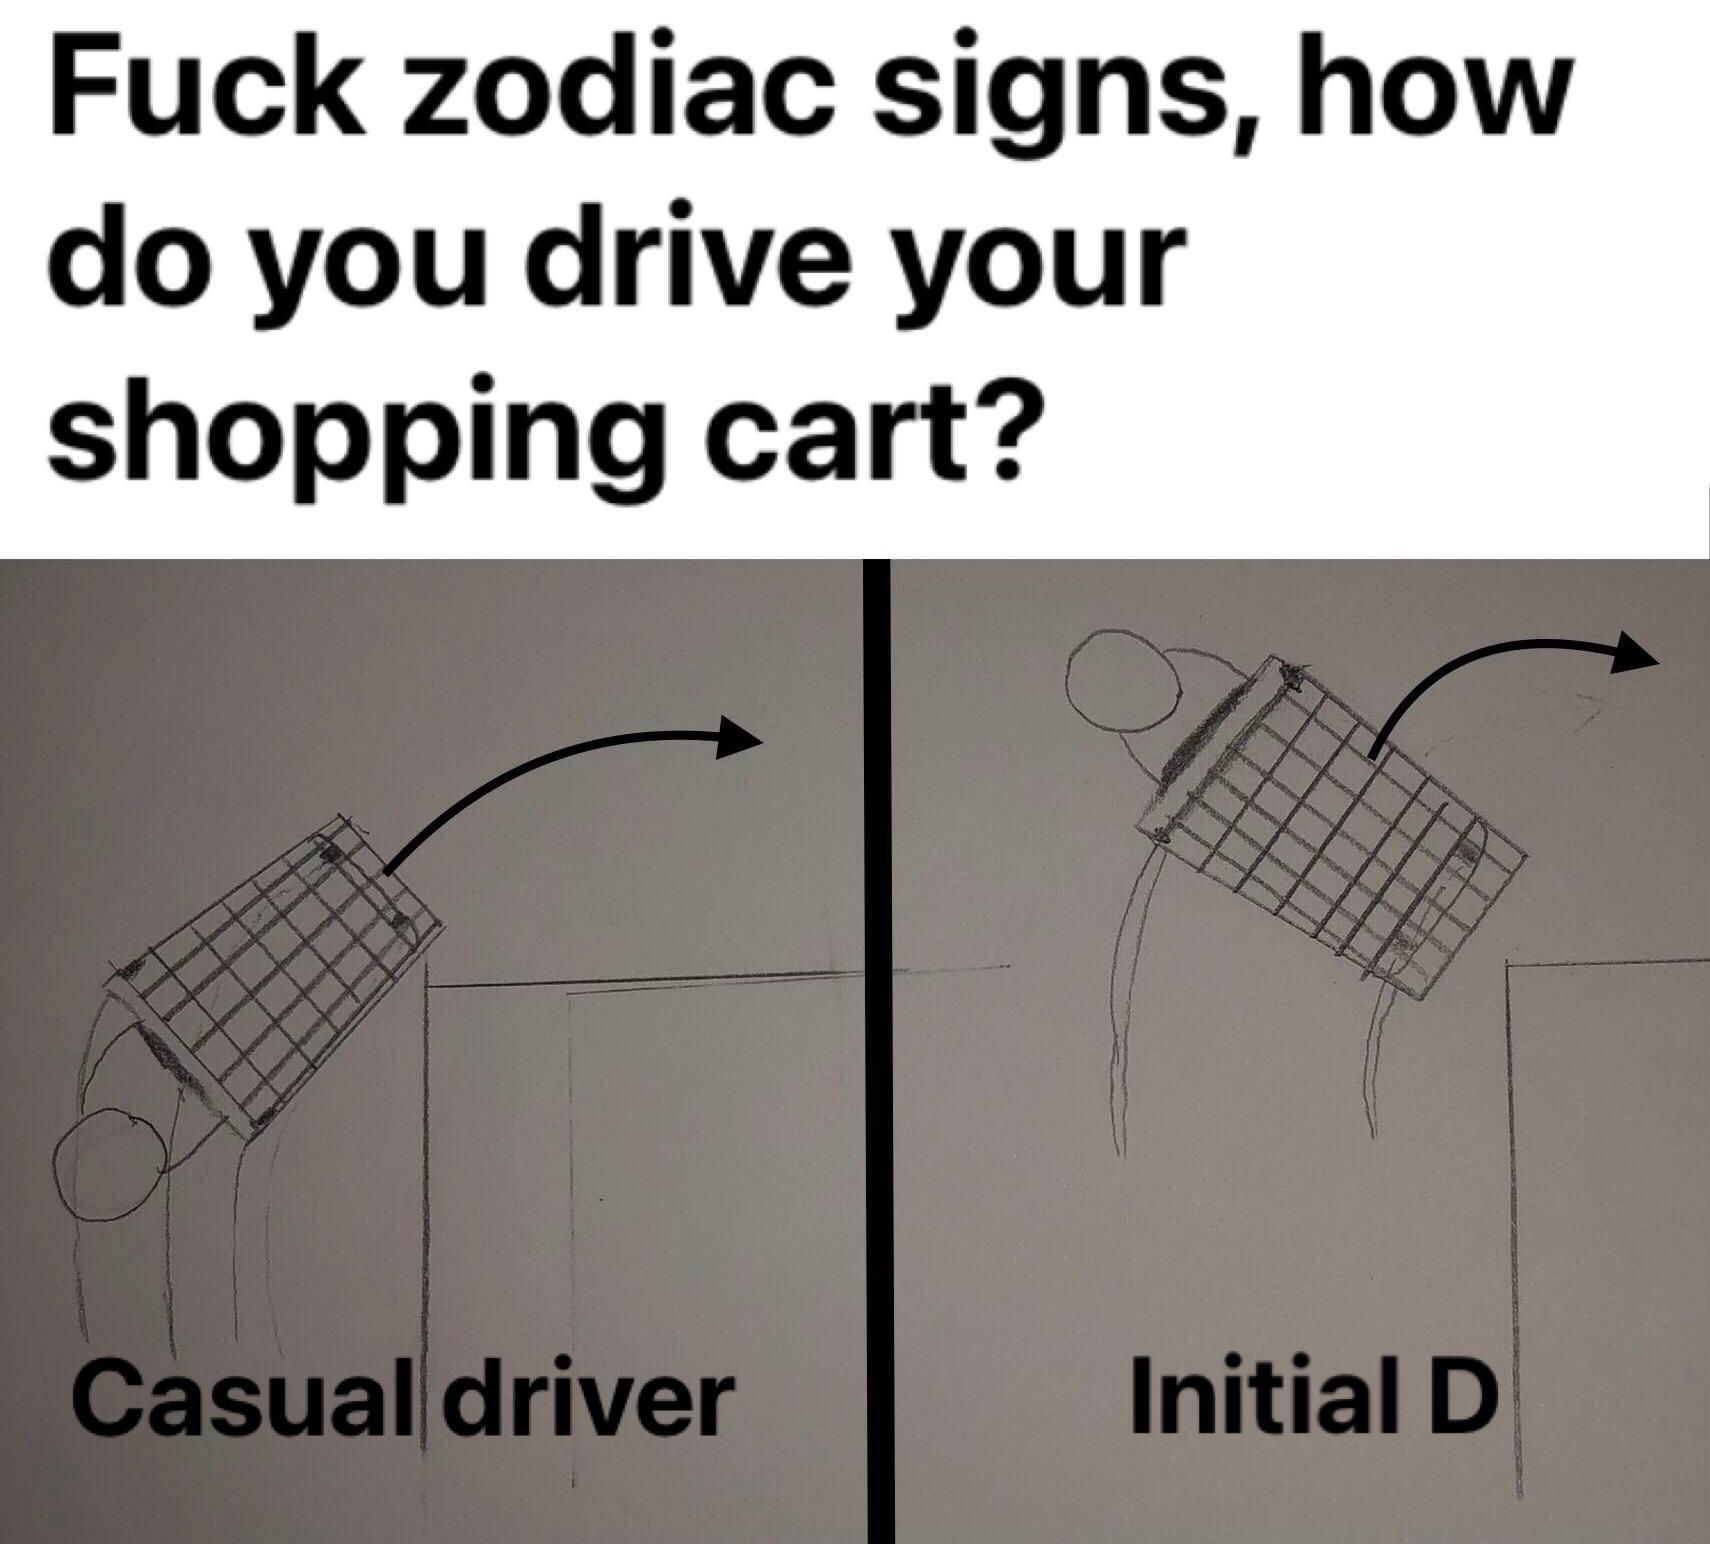 Drift the cart all the way